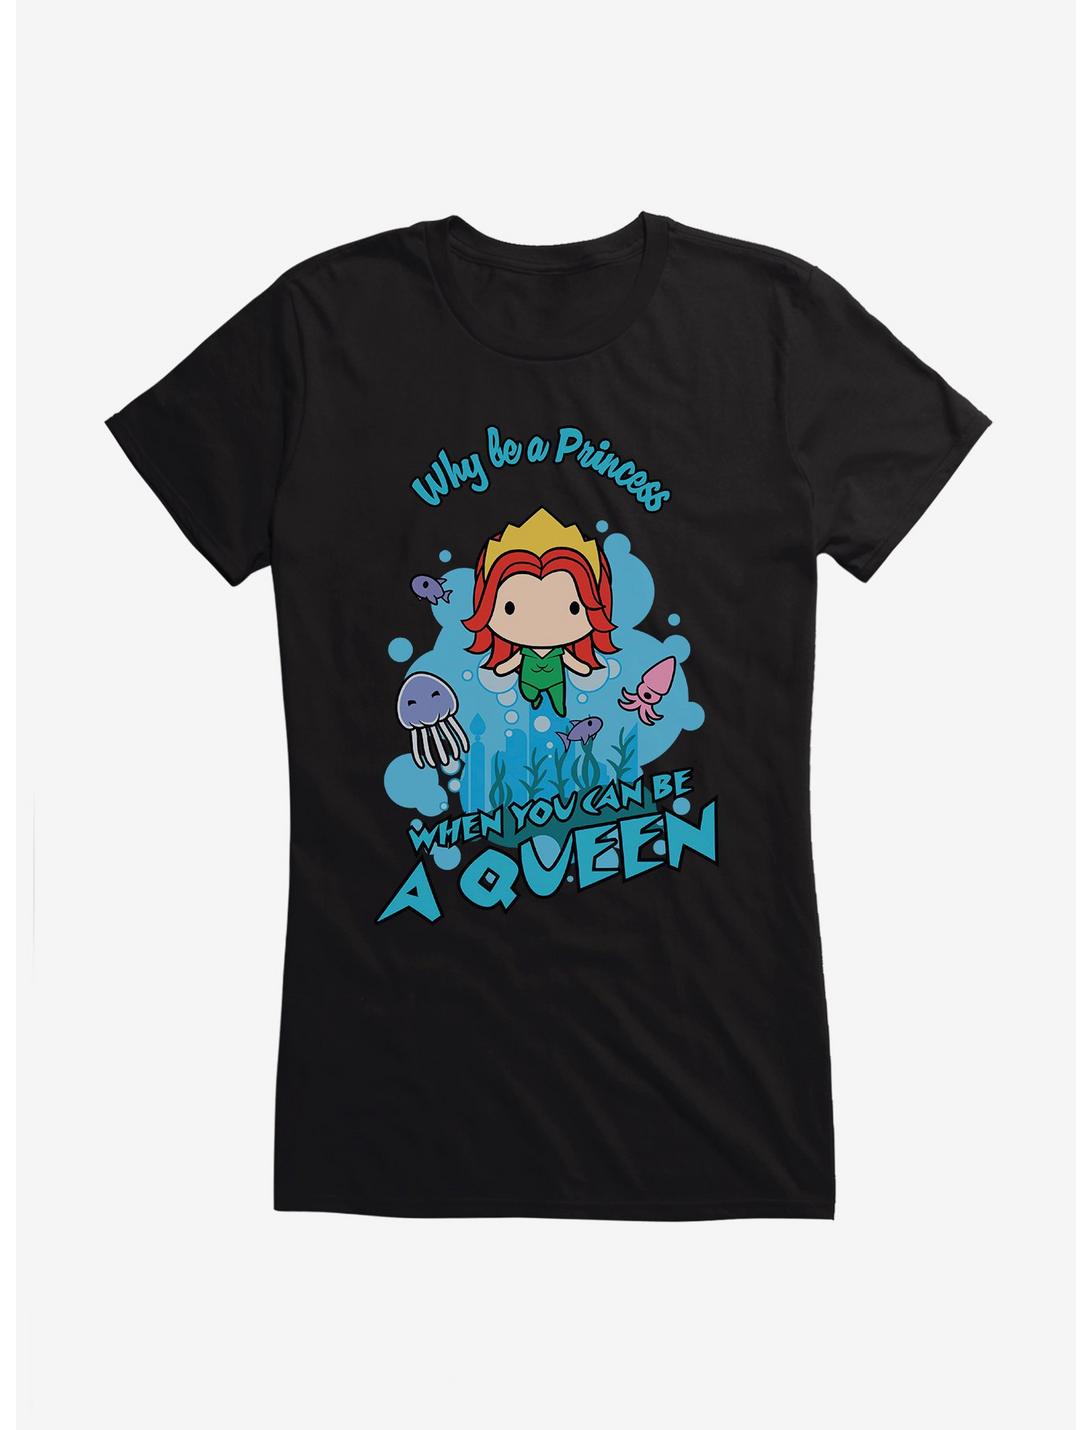 DC Comics Aquaman Chibi Queen Mera Girls T-Shirt, , hi-res